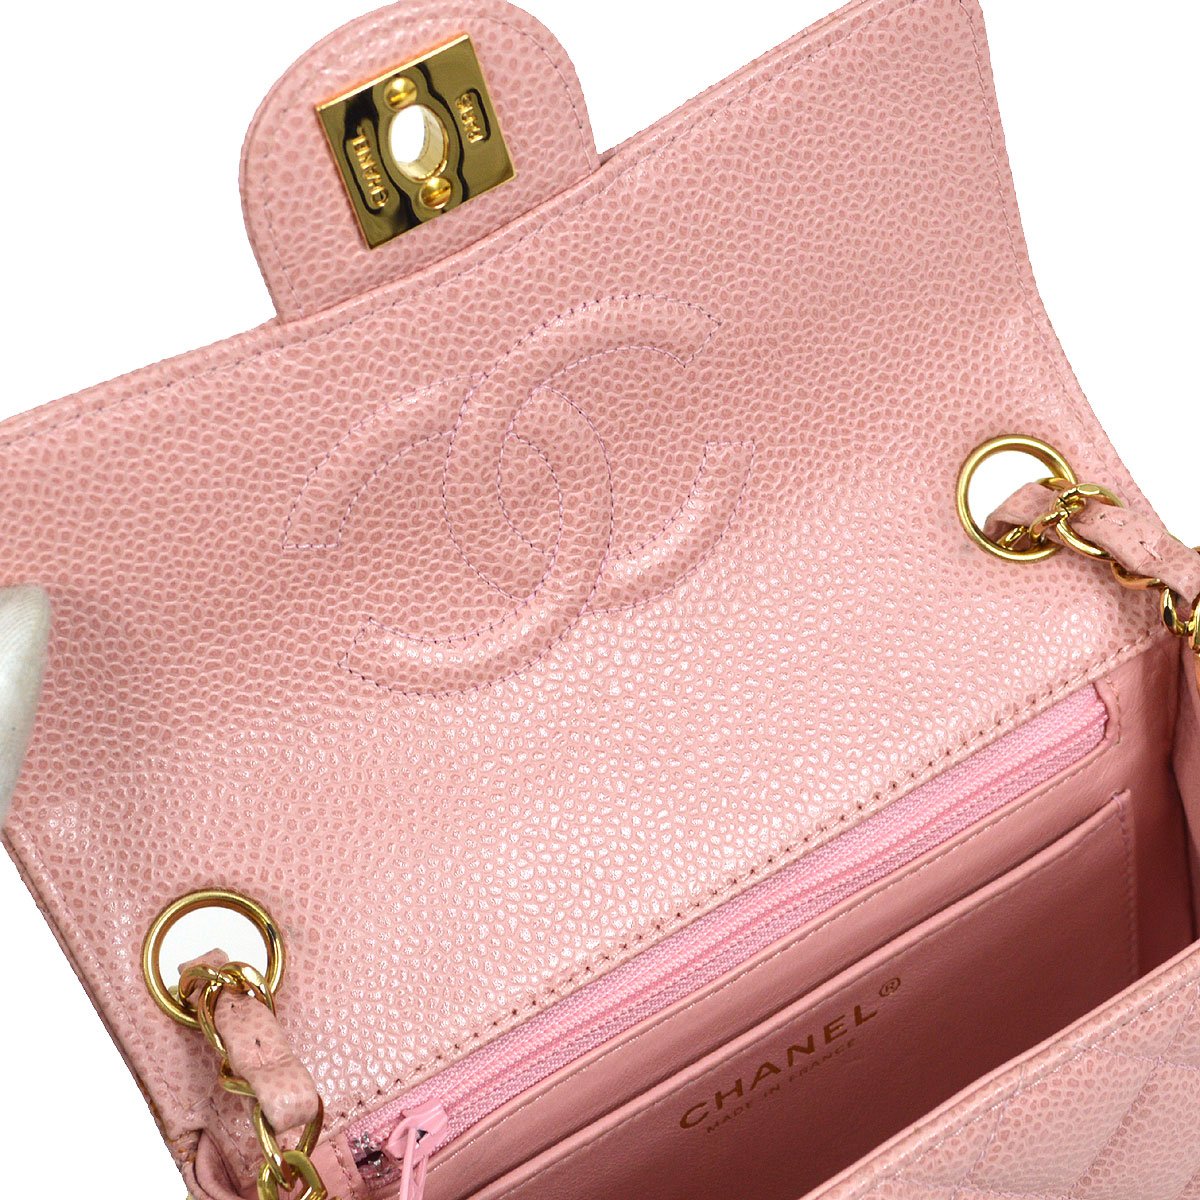 CHANEL 2003-2004 Shoulder Bag Pink Caviar 87826